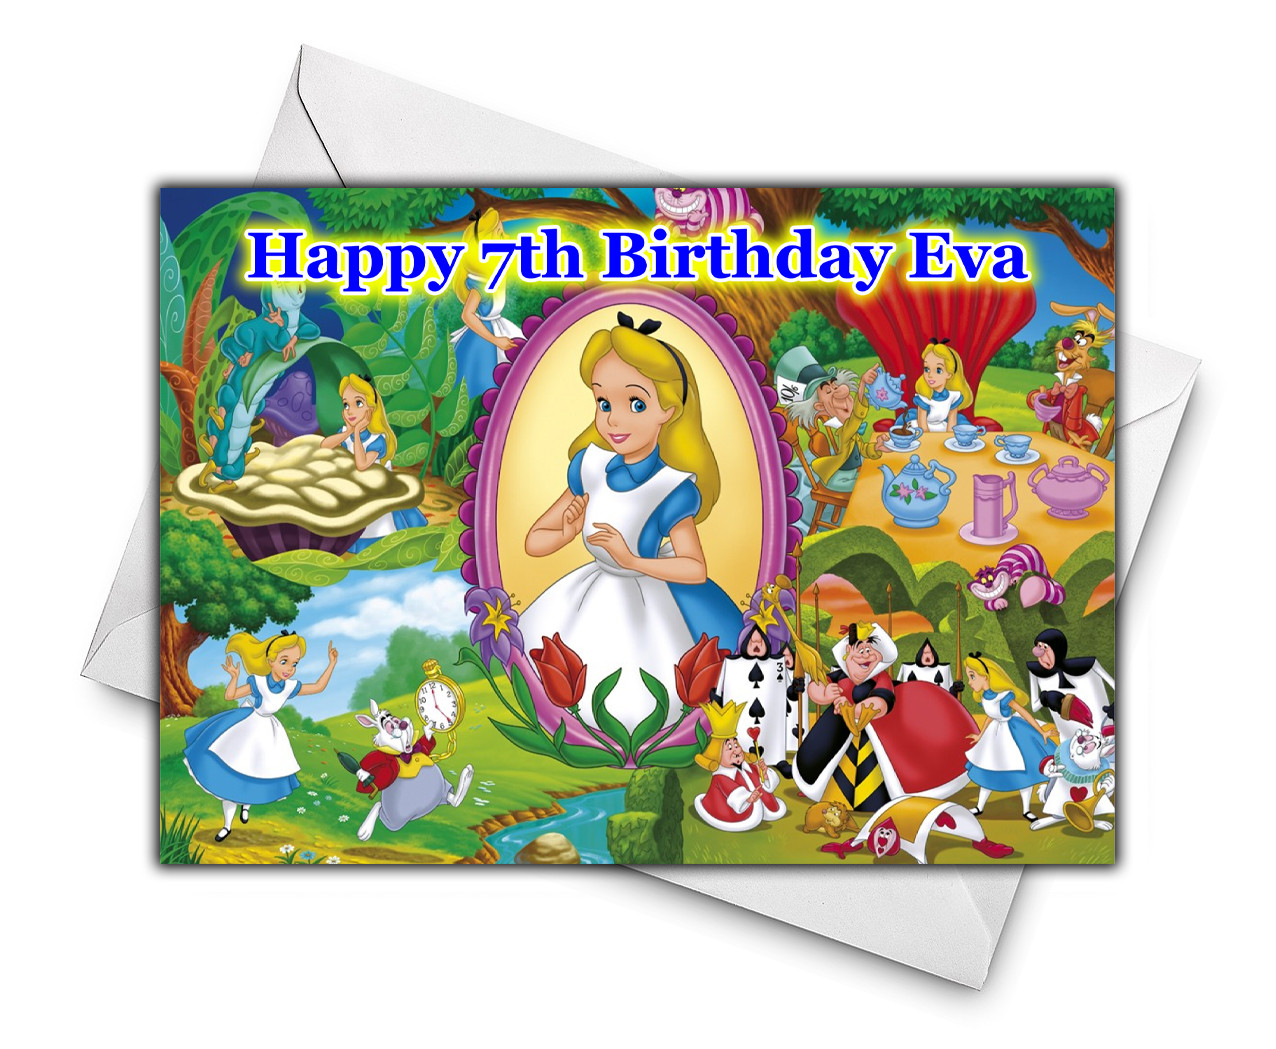 Alice In Wonderland Birthday Card
 ALICE IN WONDERLAND Personalised Birthday Card